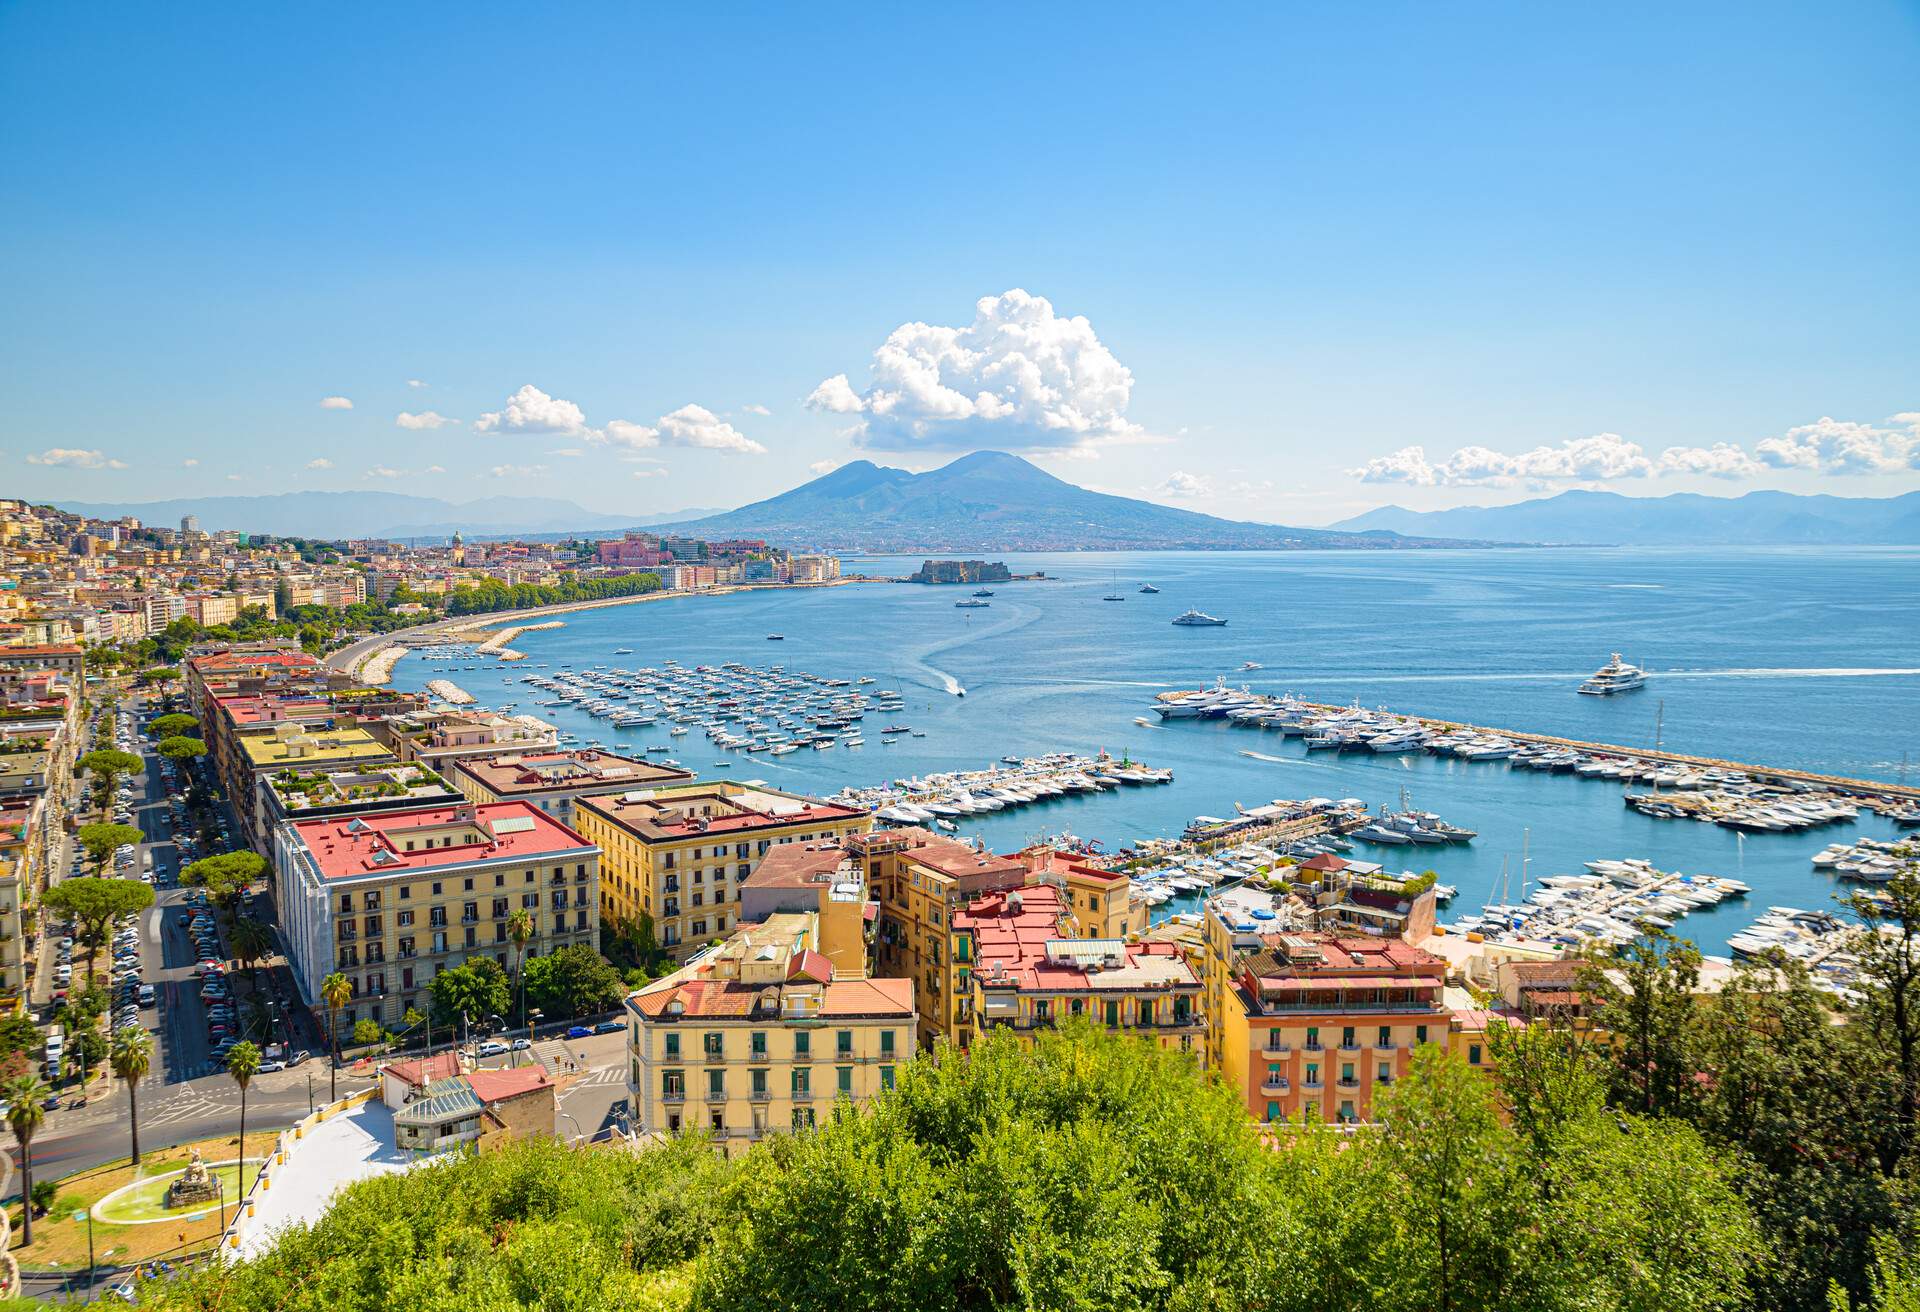 Naples, Italy.